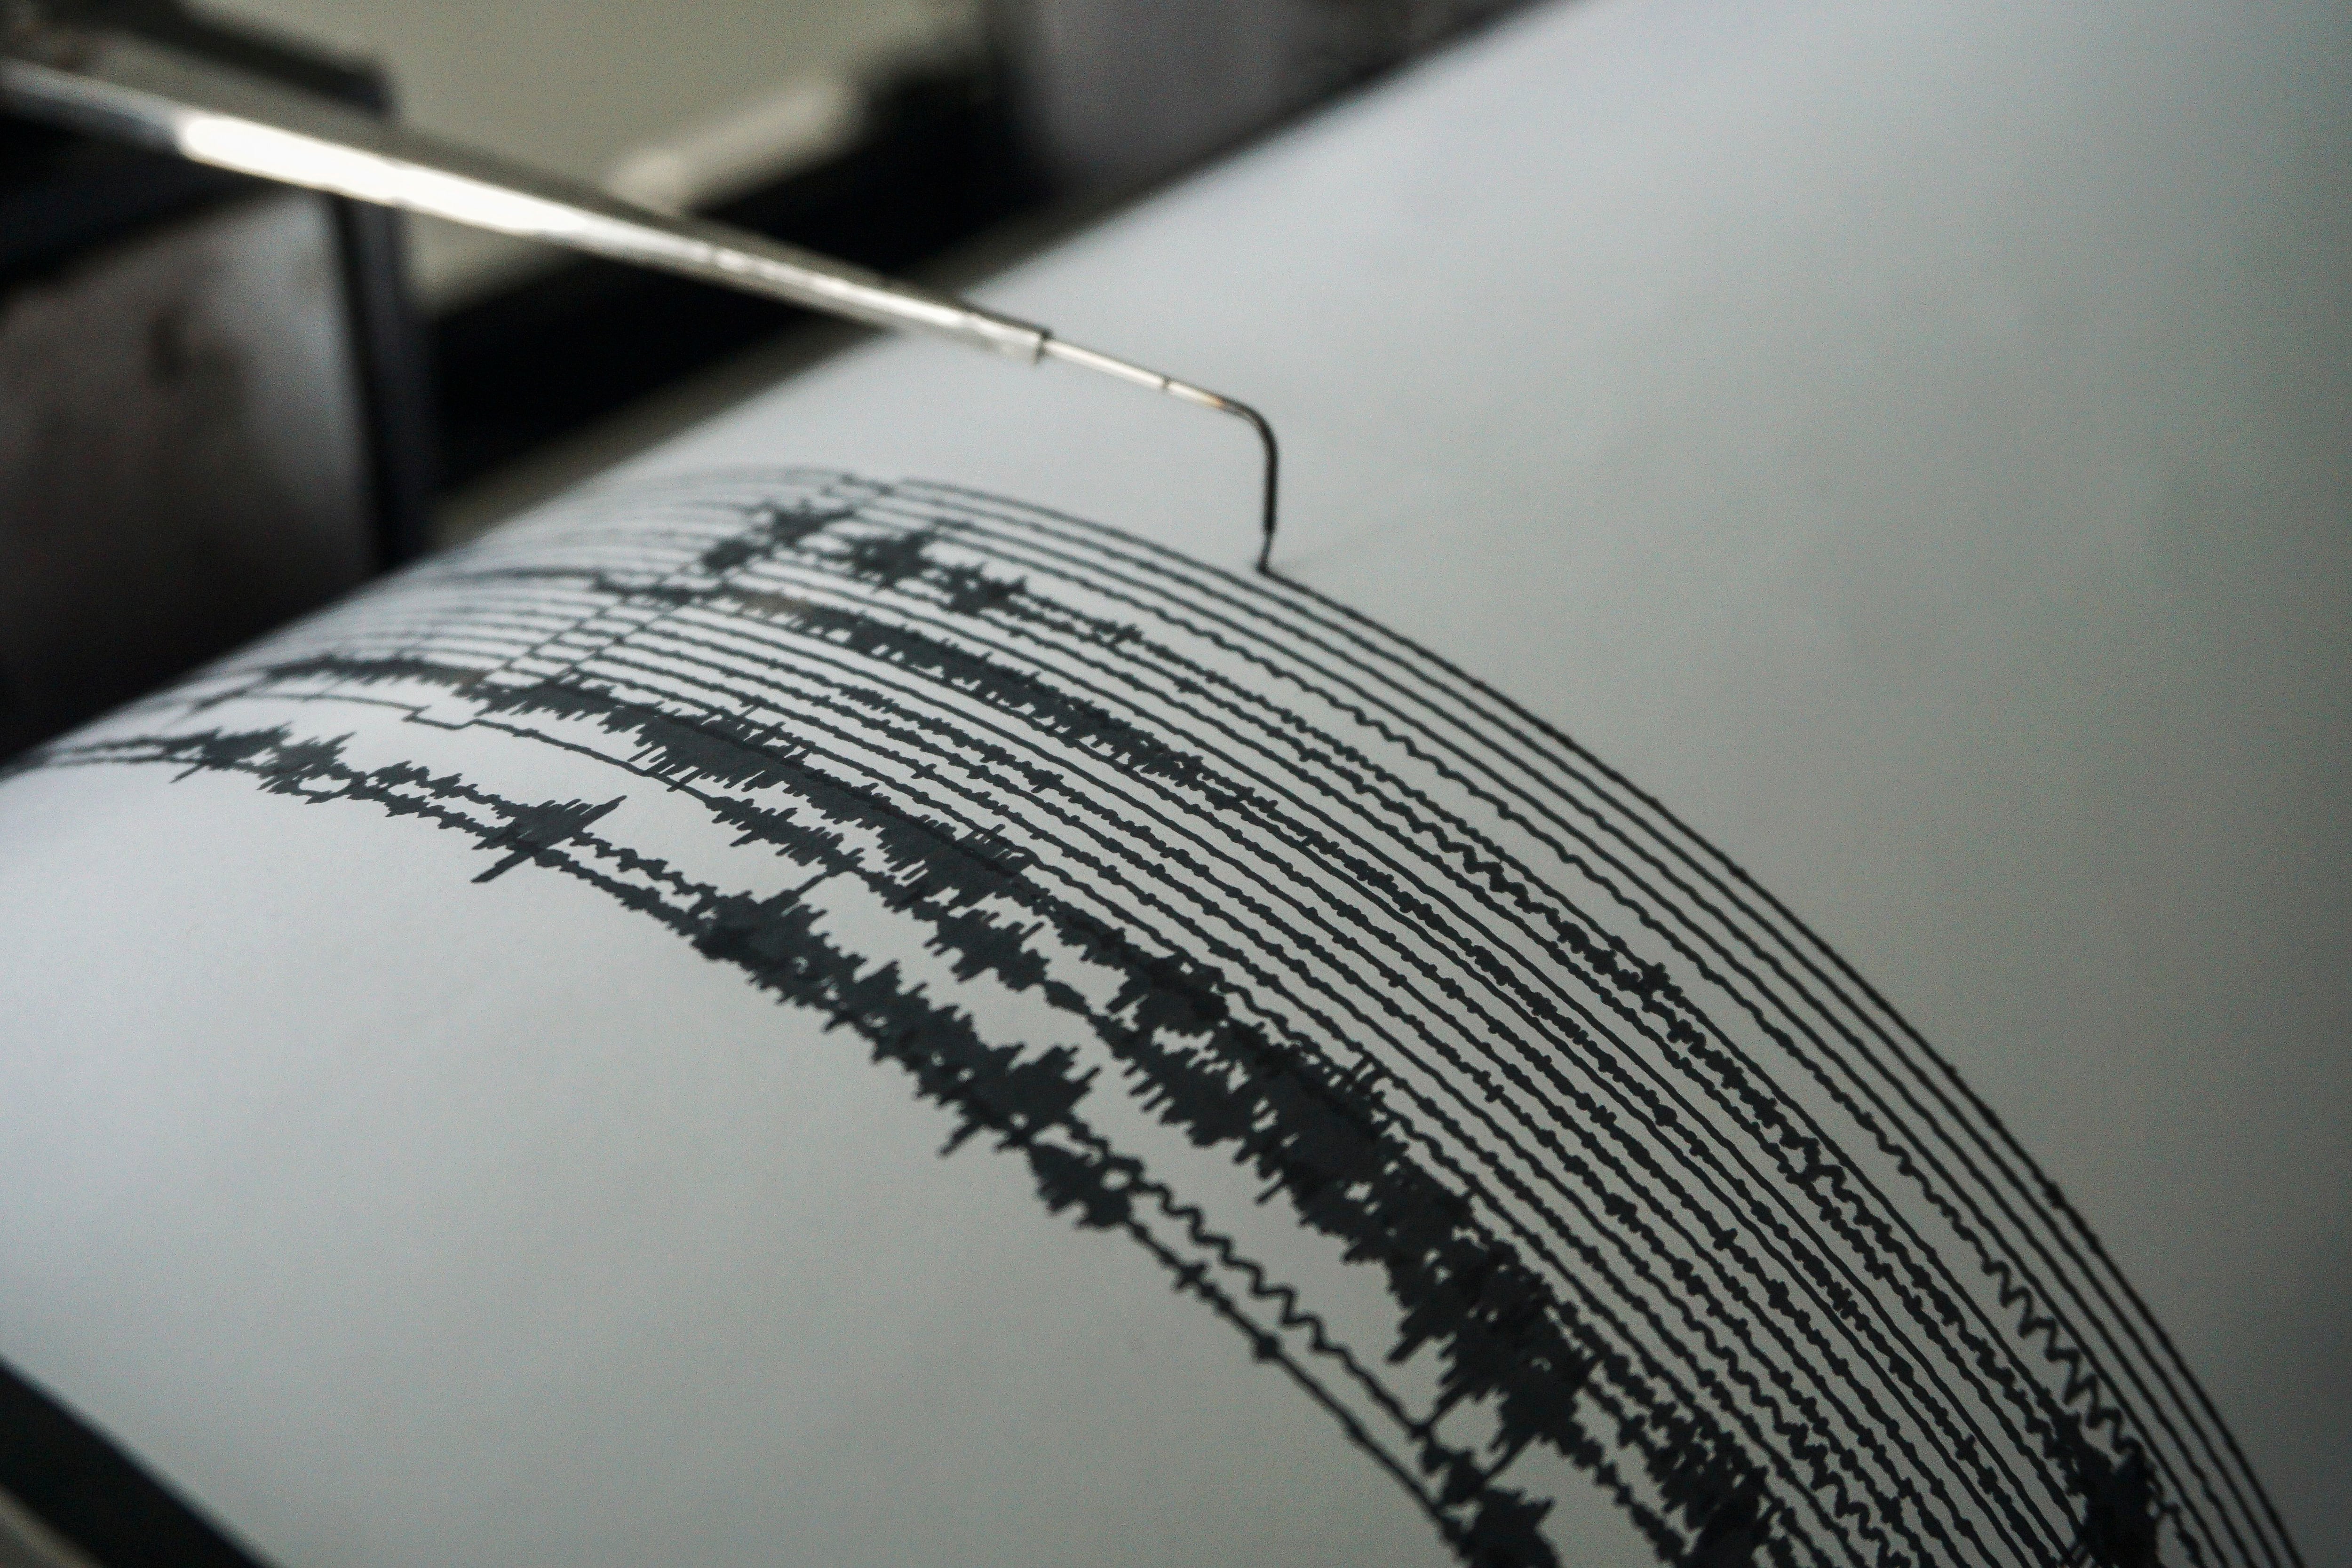 IMAGEN DE REFERENCIA: Gráficos de actividad sísmica, en una fotografía de archivo. Crédito: EFE/ Ammar
